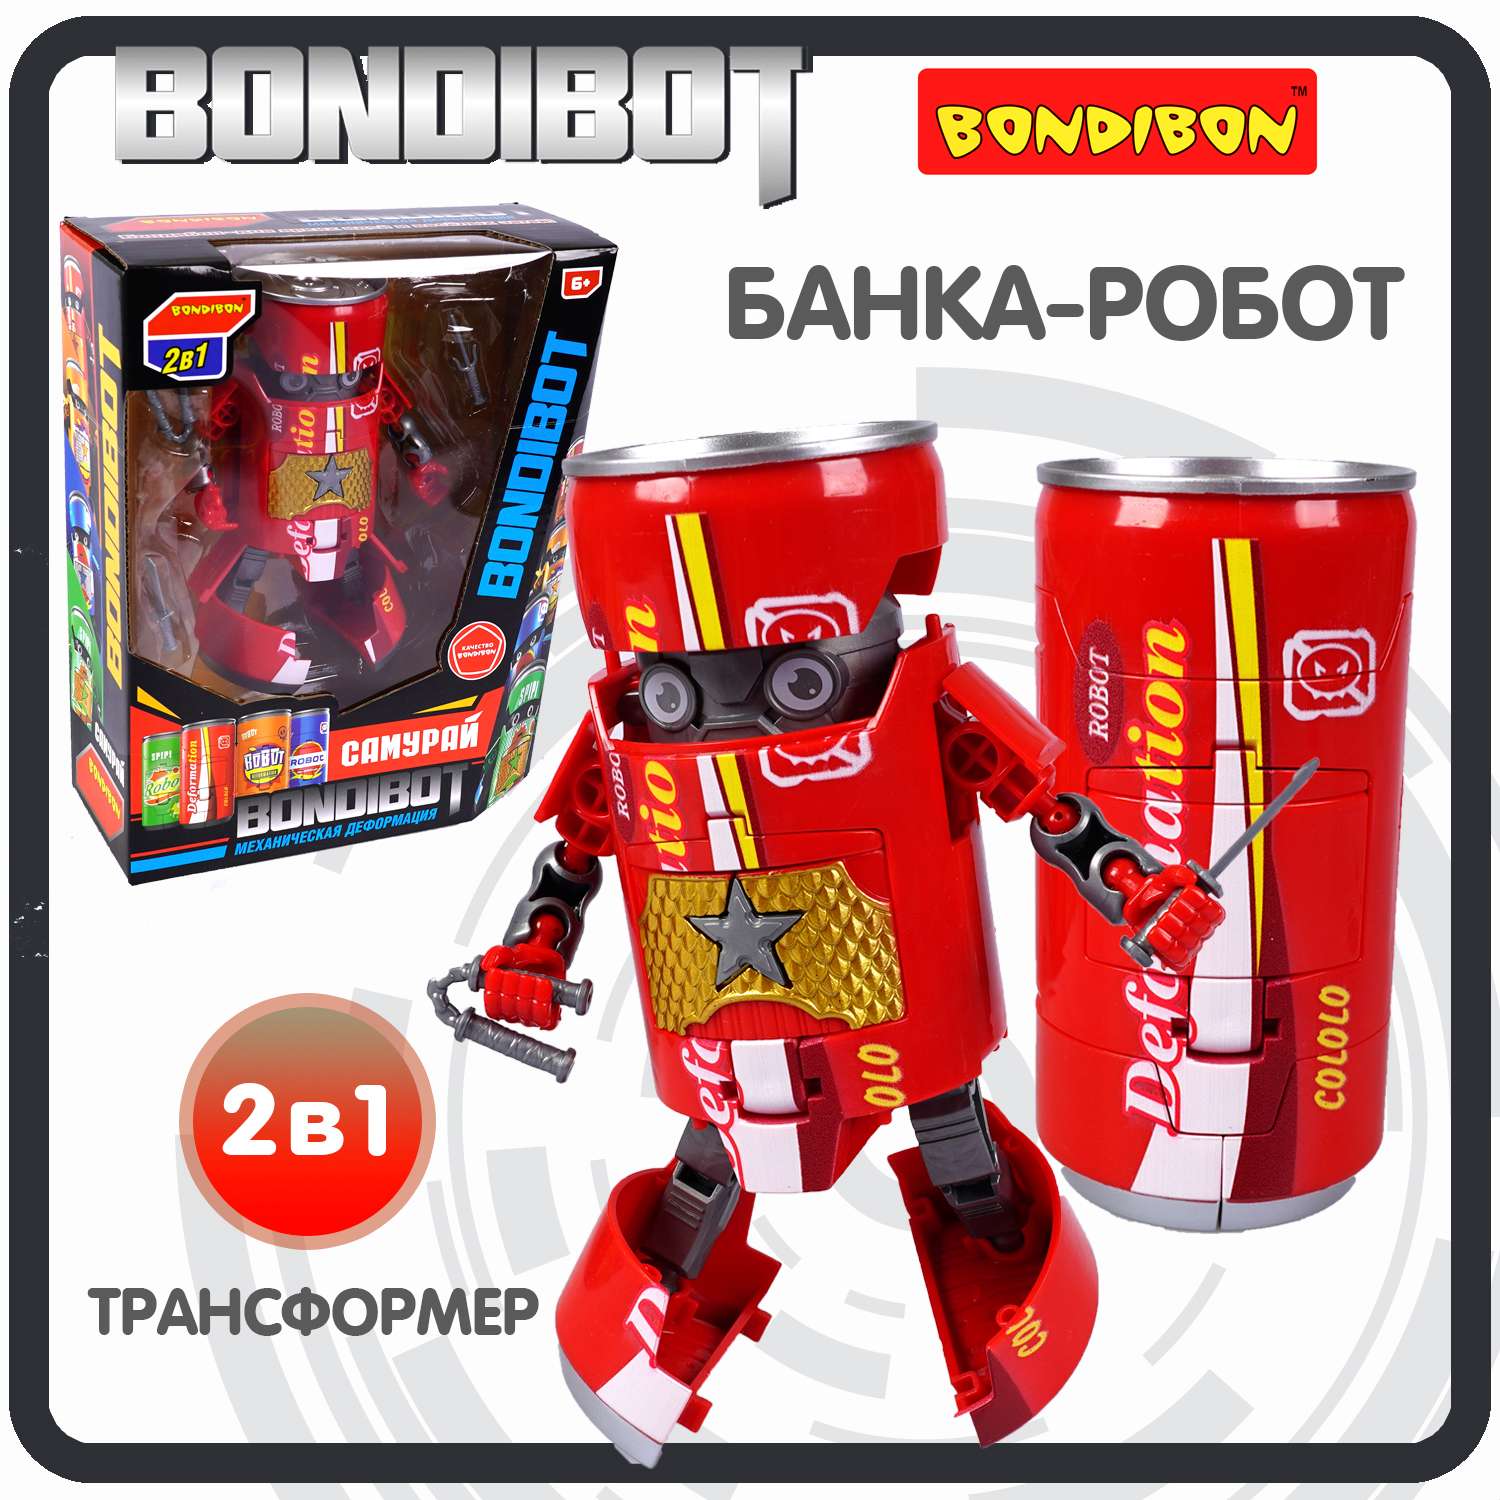 Трансформер BONDIBON BONDIBOT 2 в 1 банка - робот Самурай с оружием красного цвета - фото 1